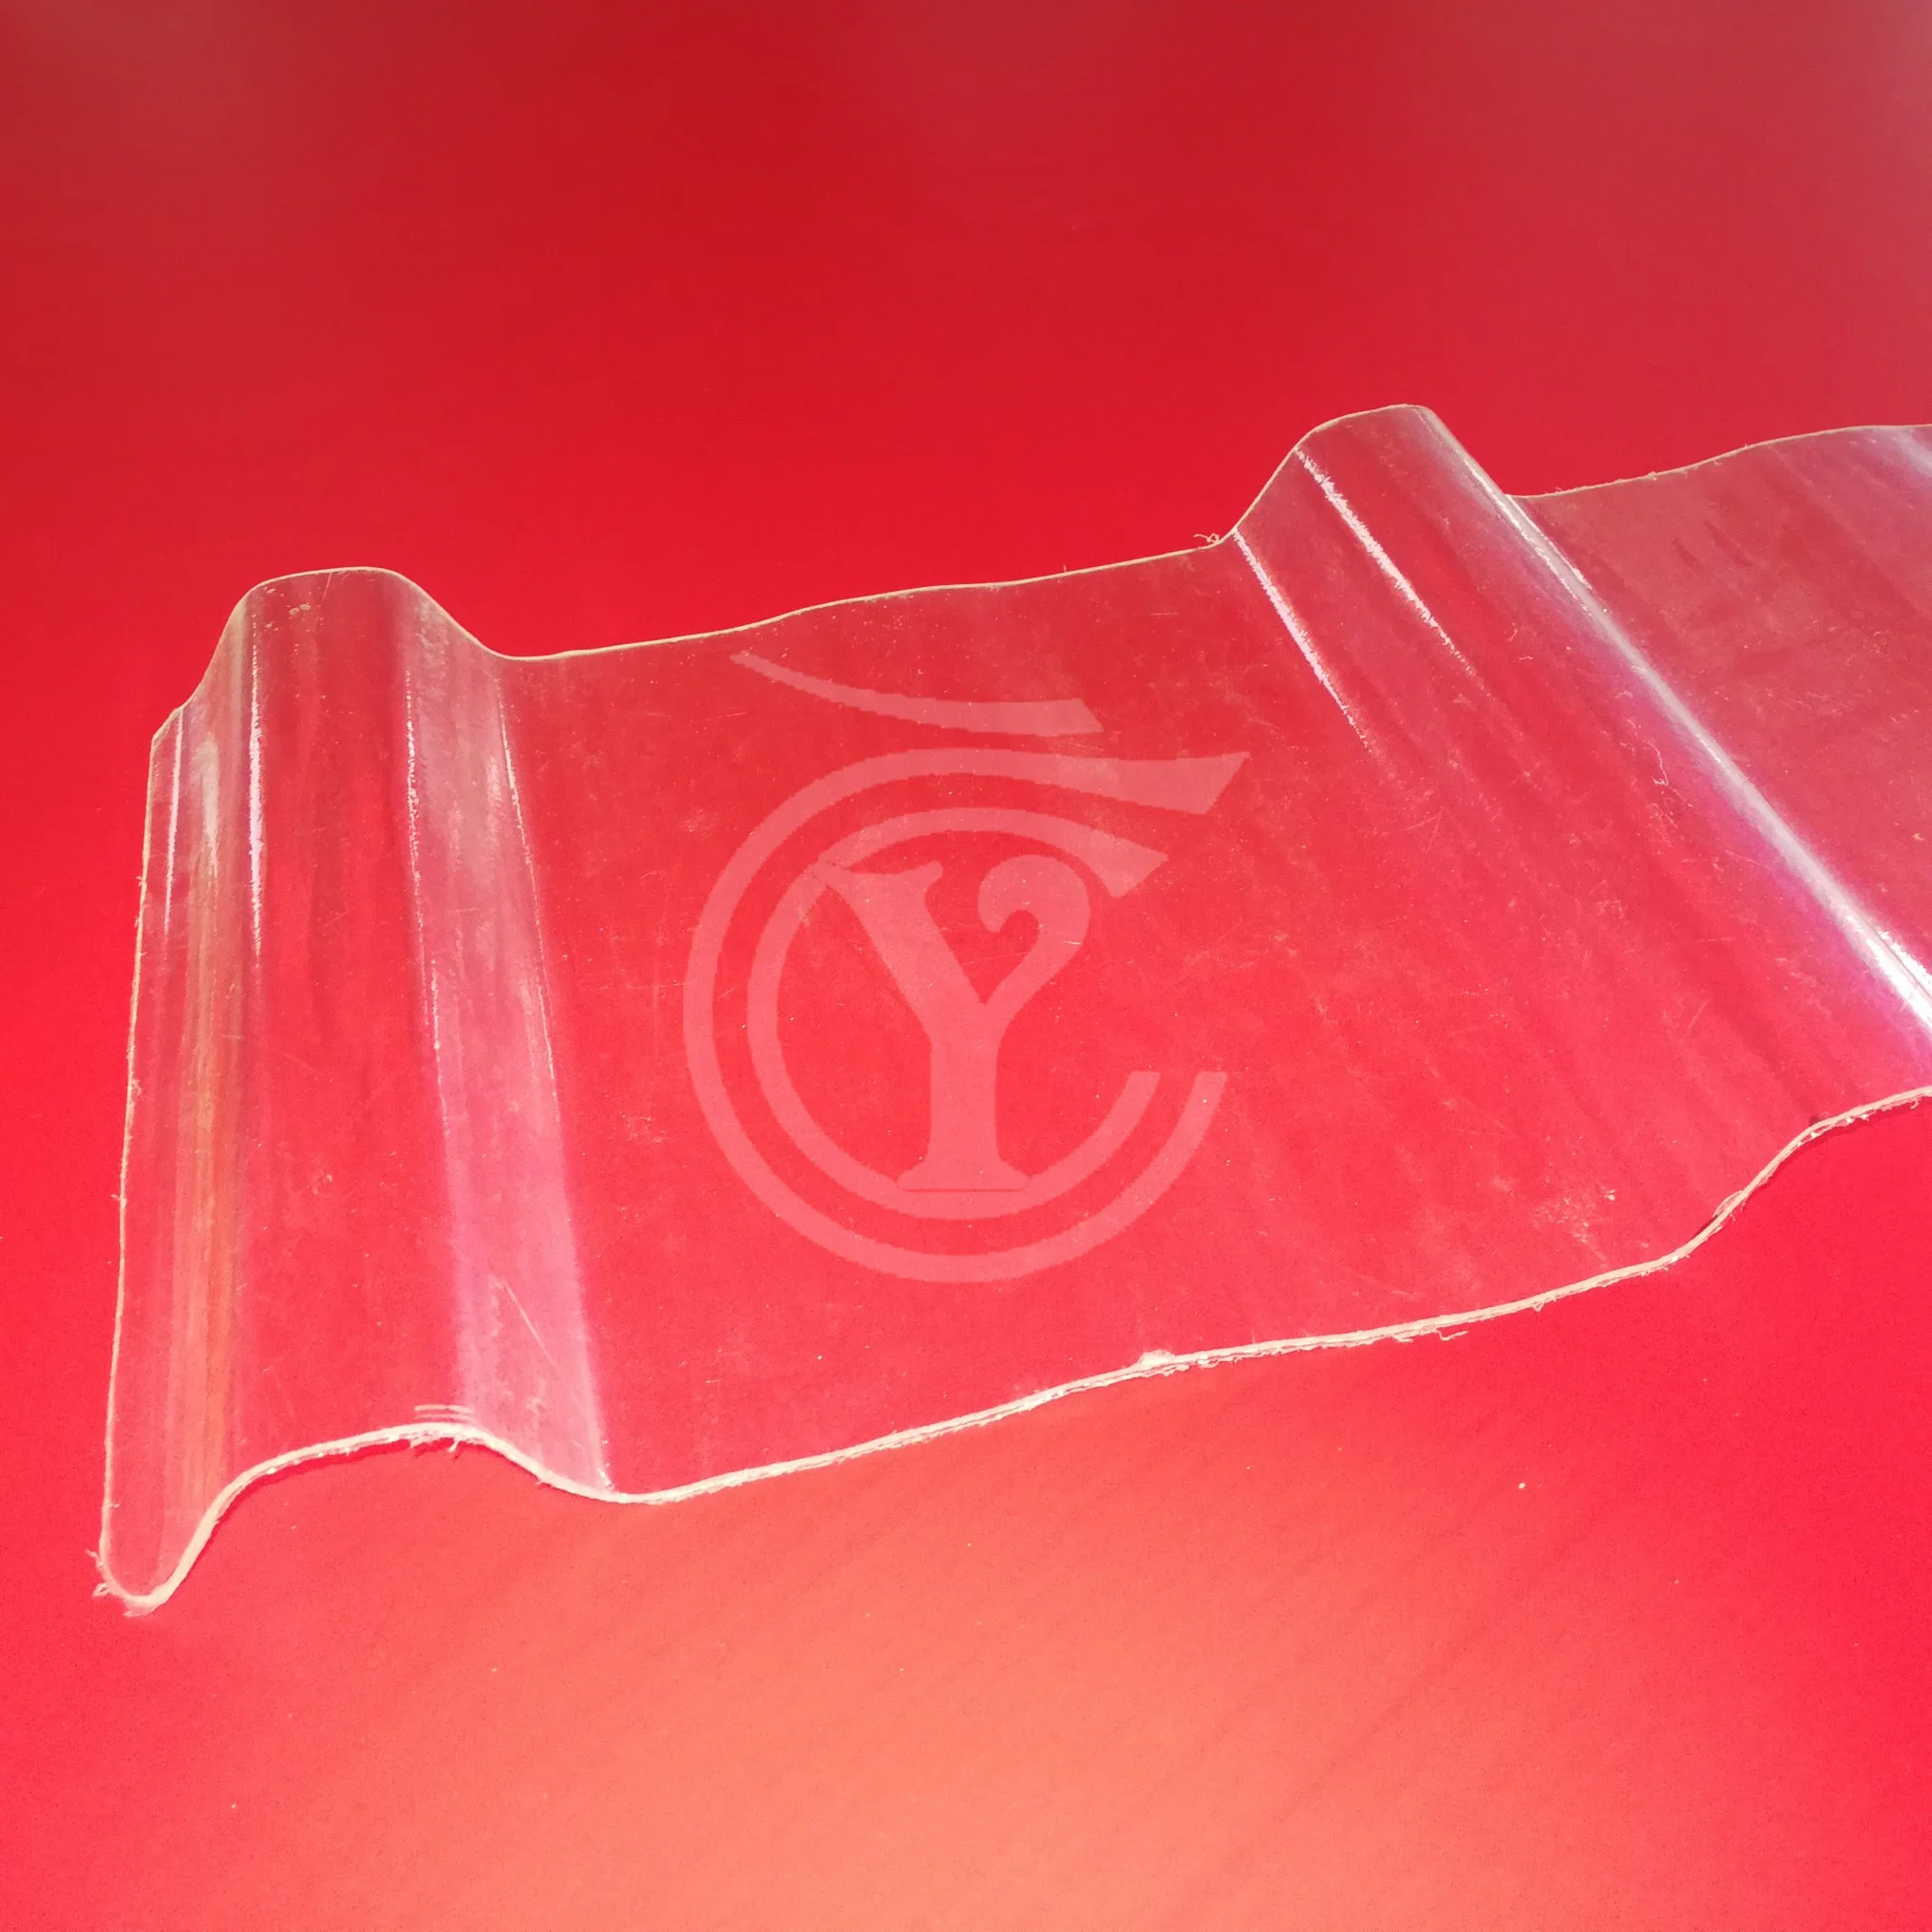 لوحة مقاومة الماء الناعمة المصنوعة من البلاستيك المقوى من الزجاج الليزجي